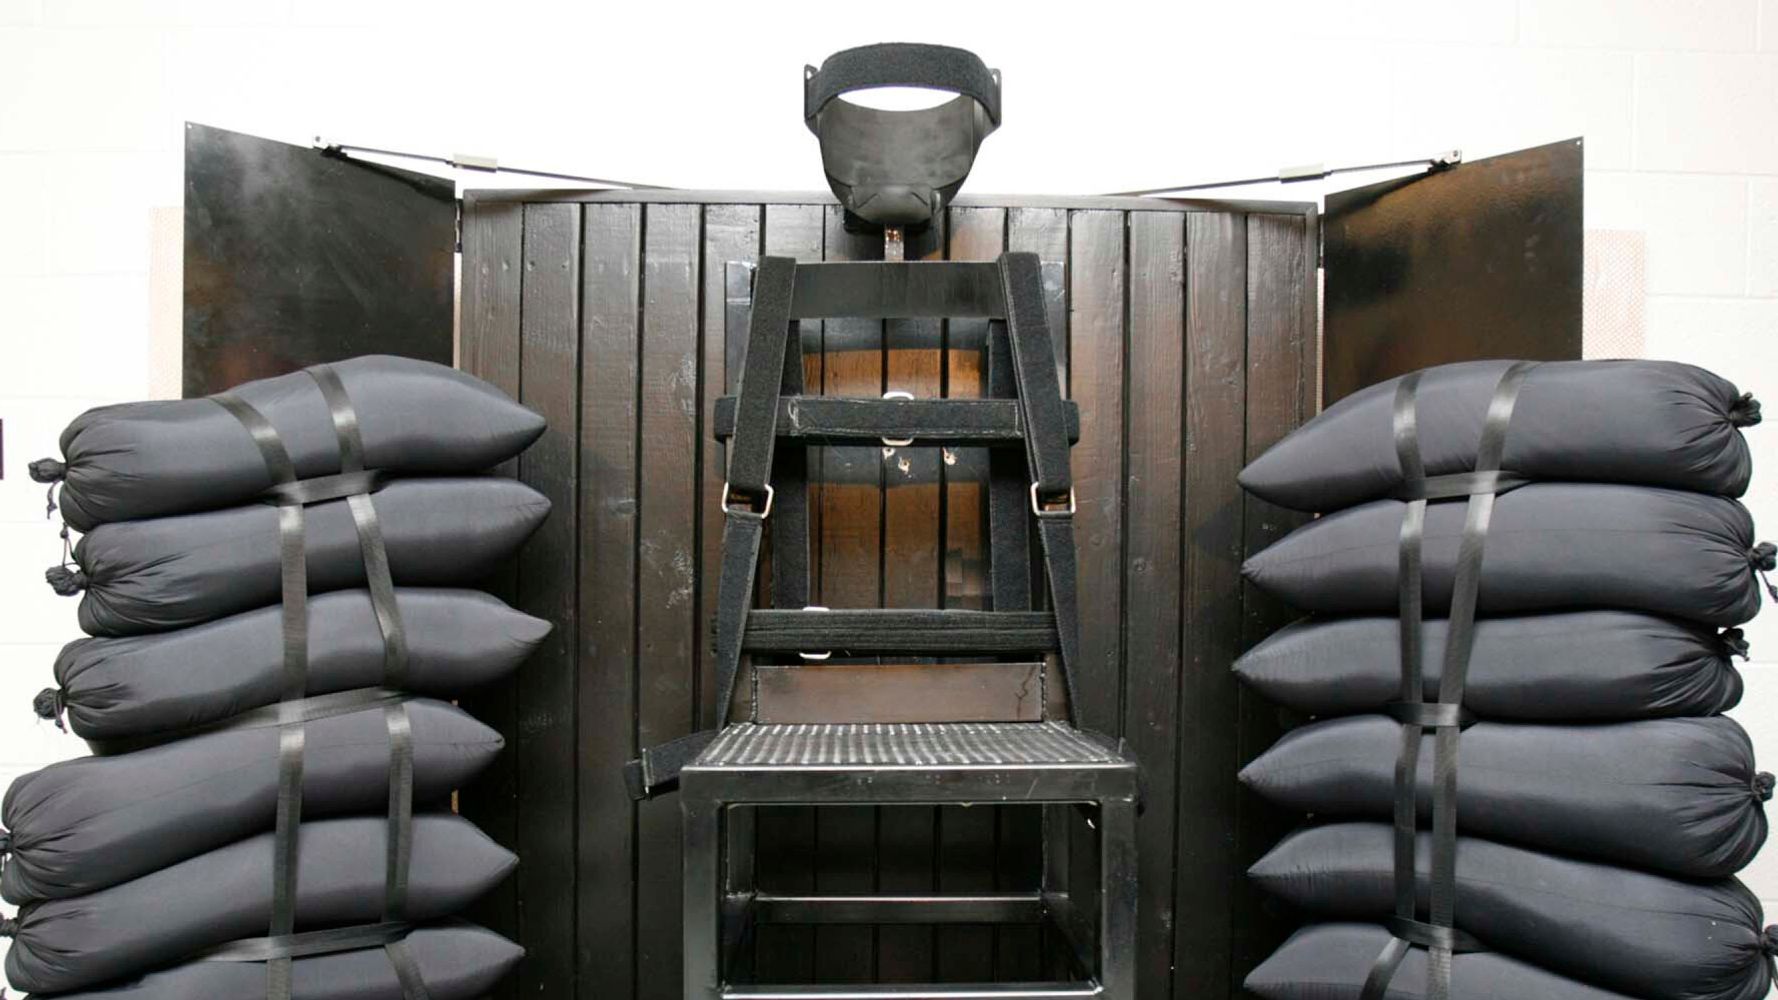 Στην Αμερική επαναφέρουν τη θανατική ποινή μέσω εκτελεστικού αποσπάσματος | HuffPost Greece ΔΙΕΘΝΕΣ